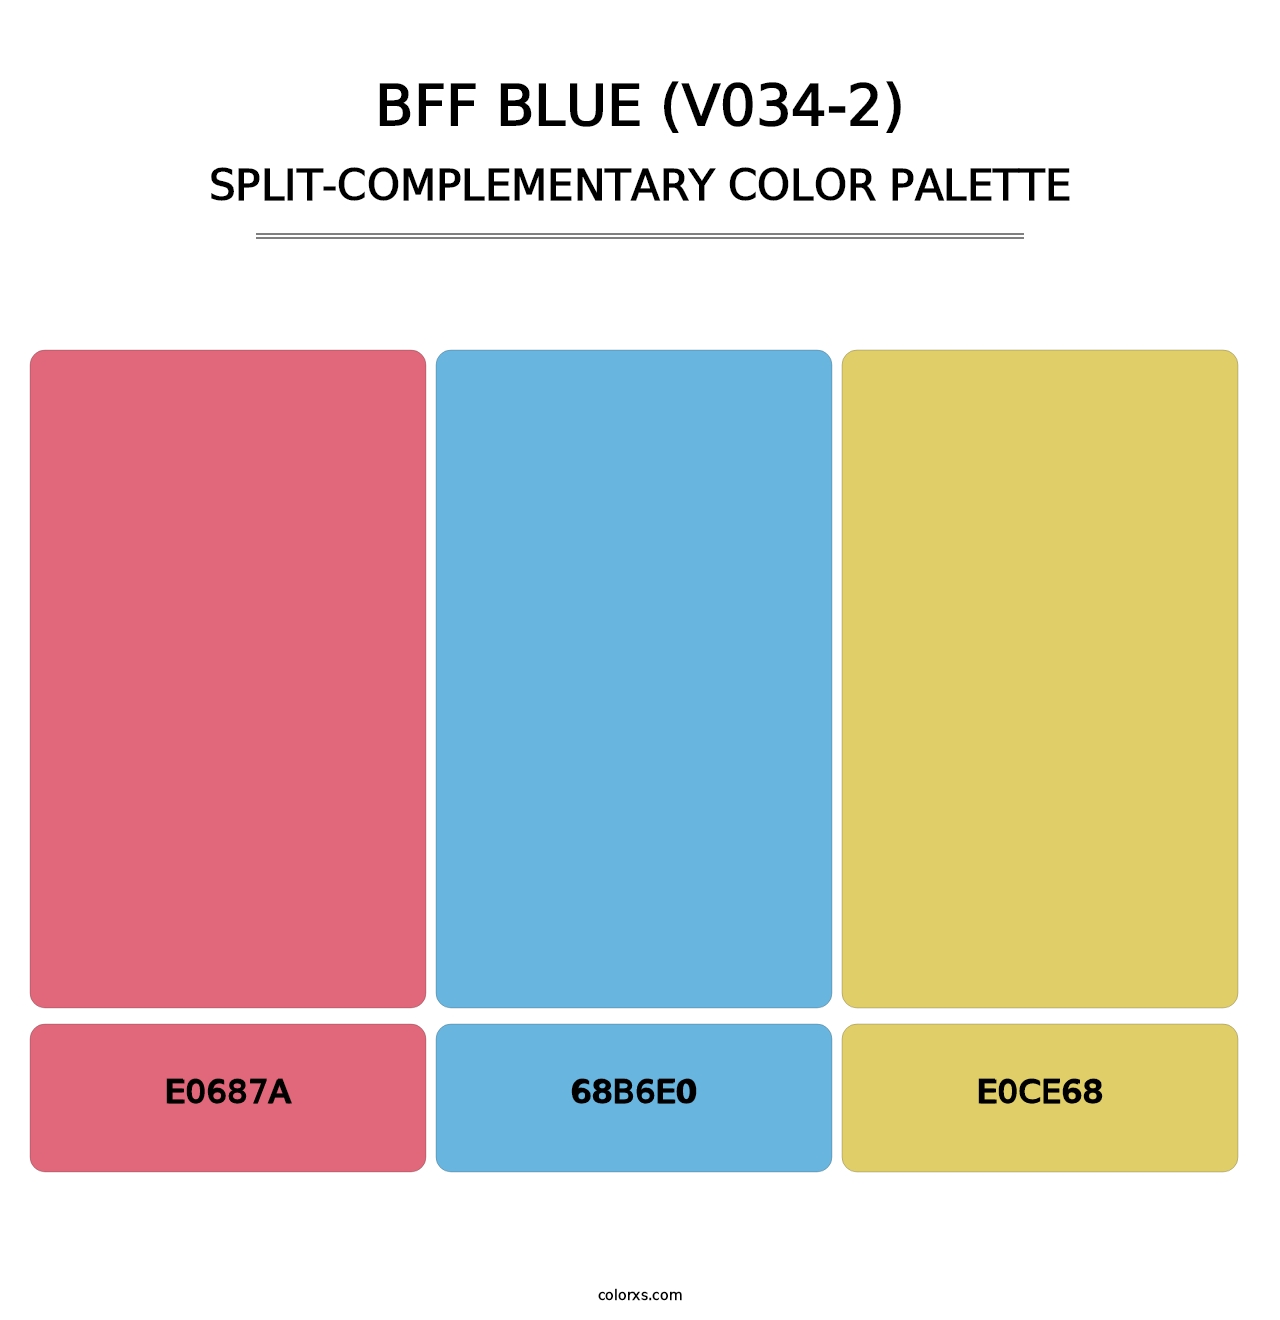 BFF Blue (V034-2) - Split-Complementary Color Palette